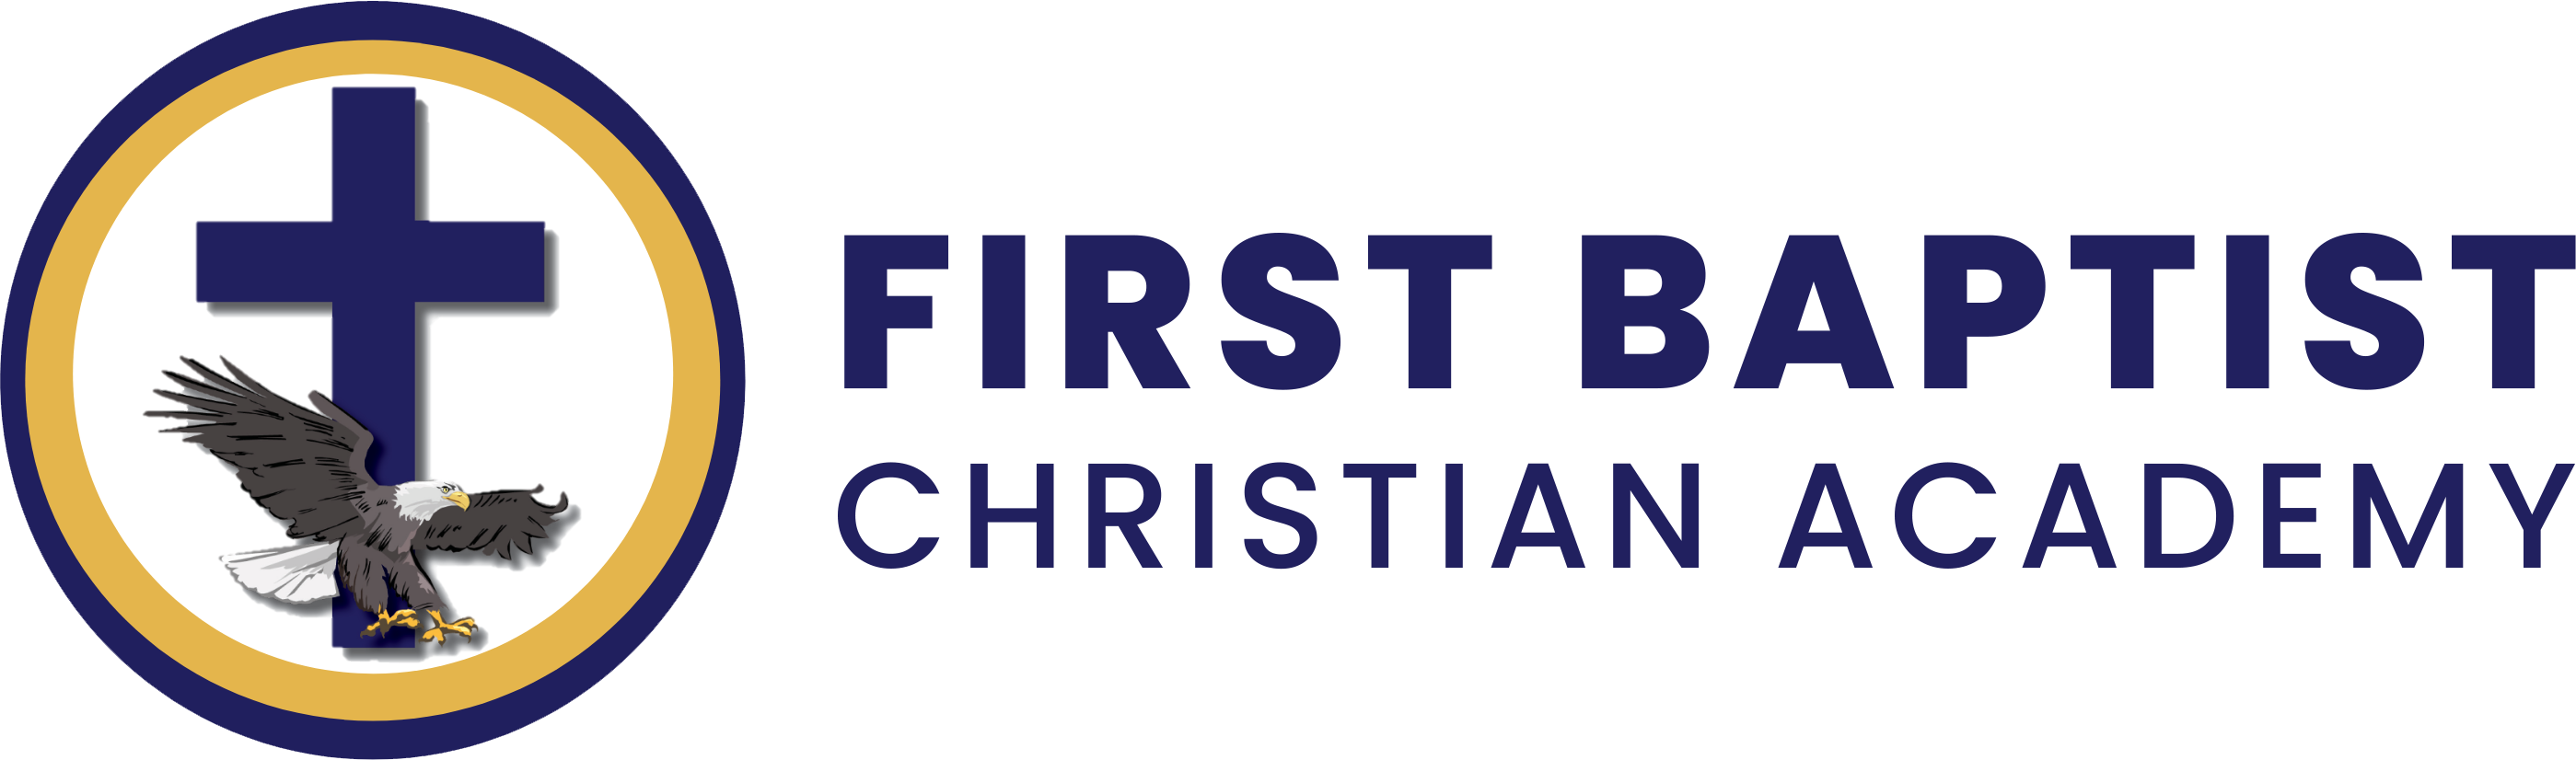 First Baptist Christian Academy - Sierra Vista, AZ